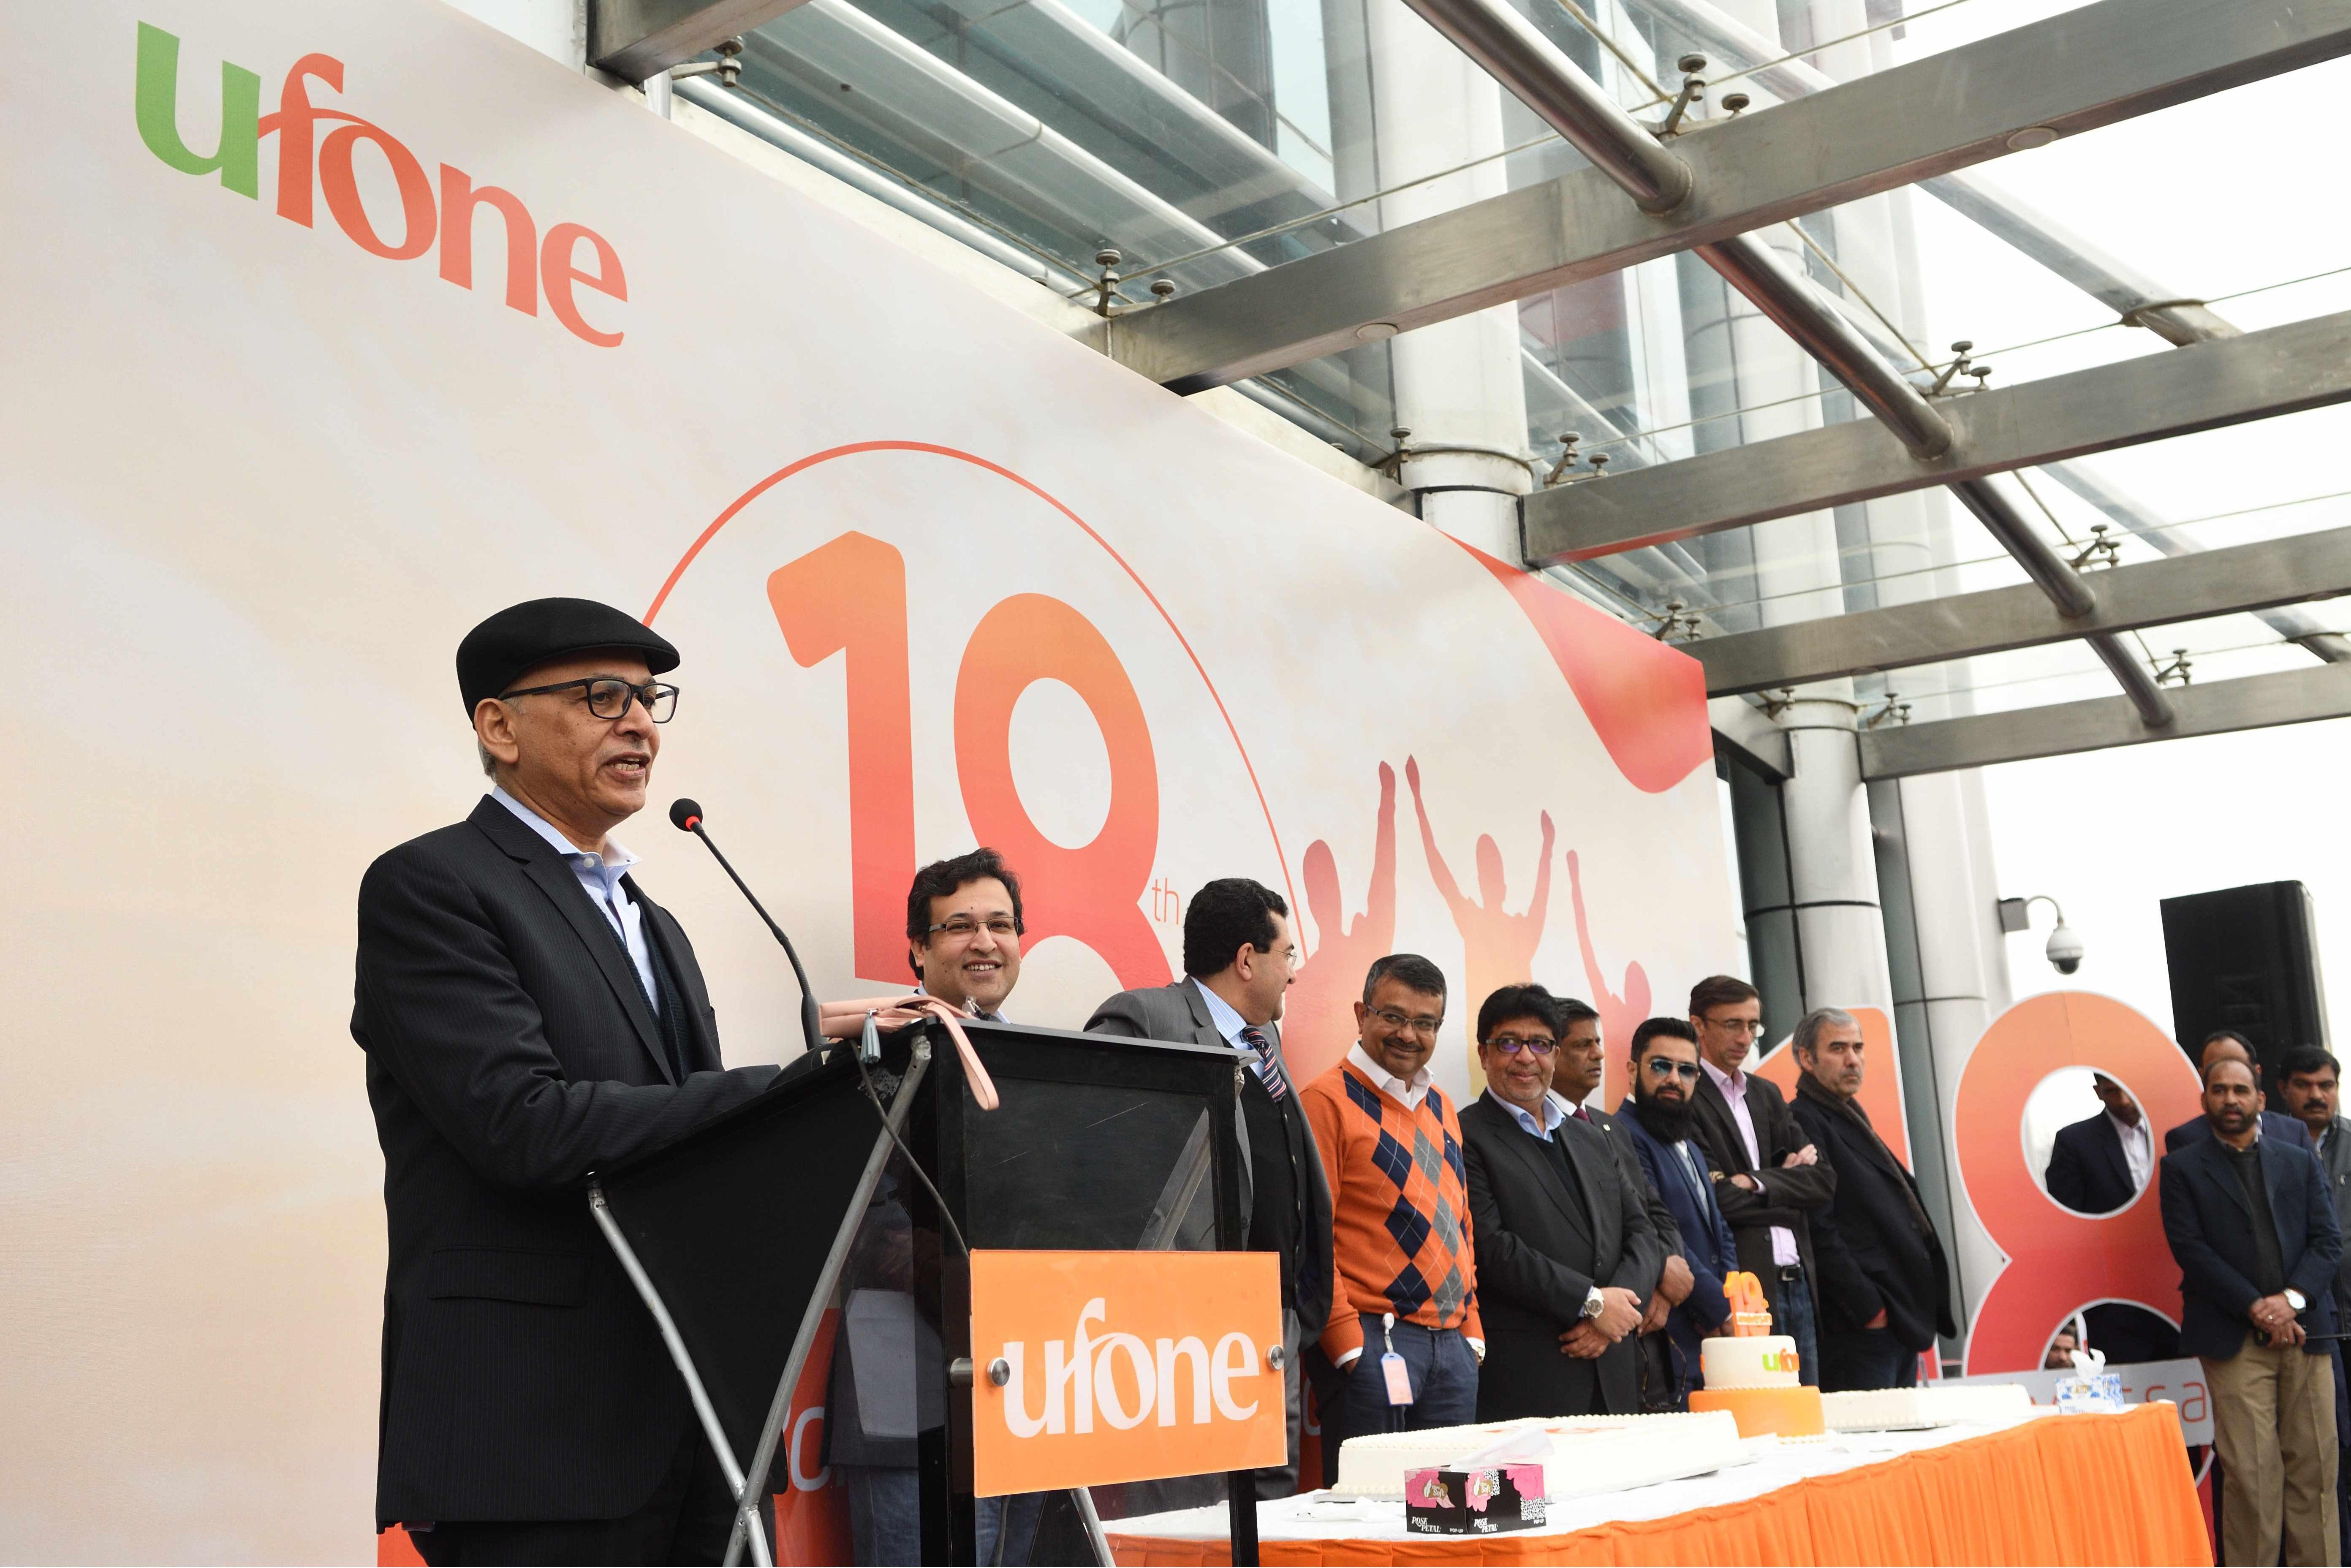 Ufone celebrates 18th anniversary